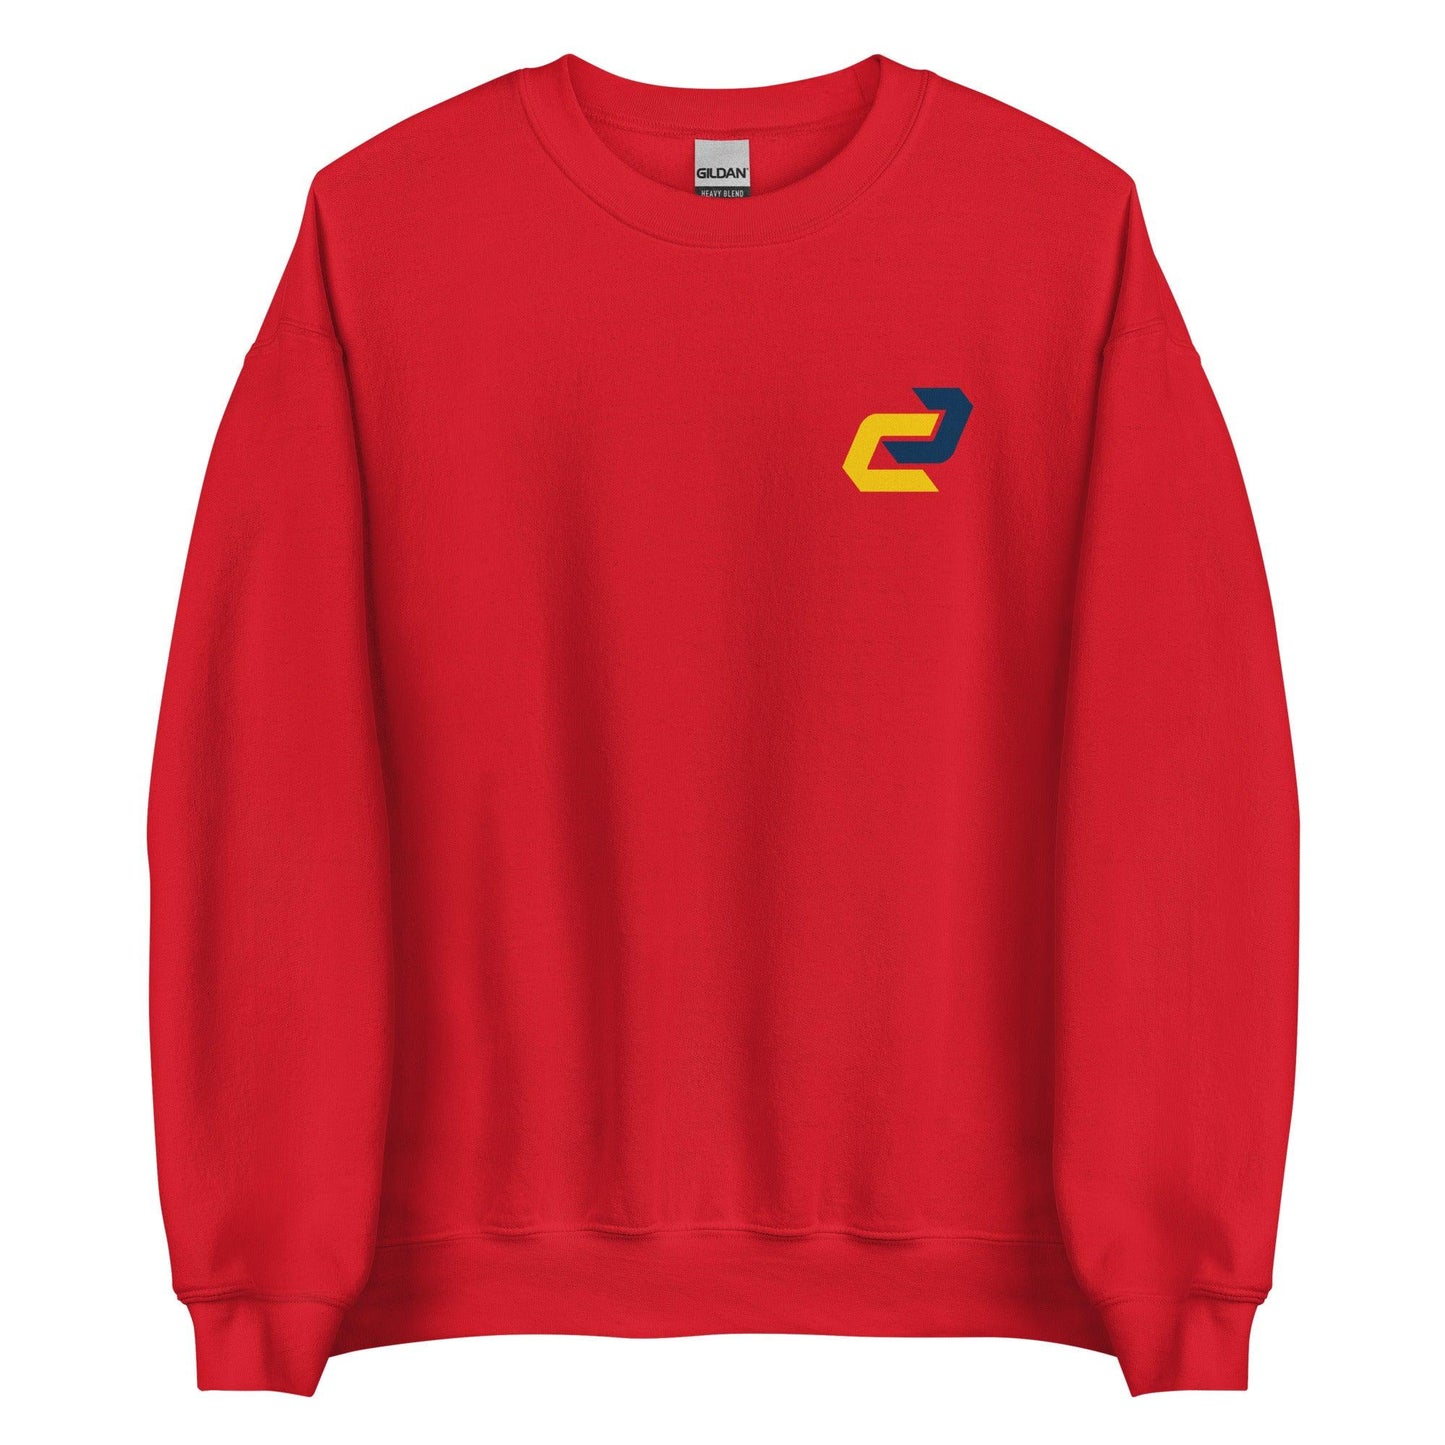 CJ Stokes "Essential" Sweatshirt - Fan Arch